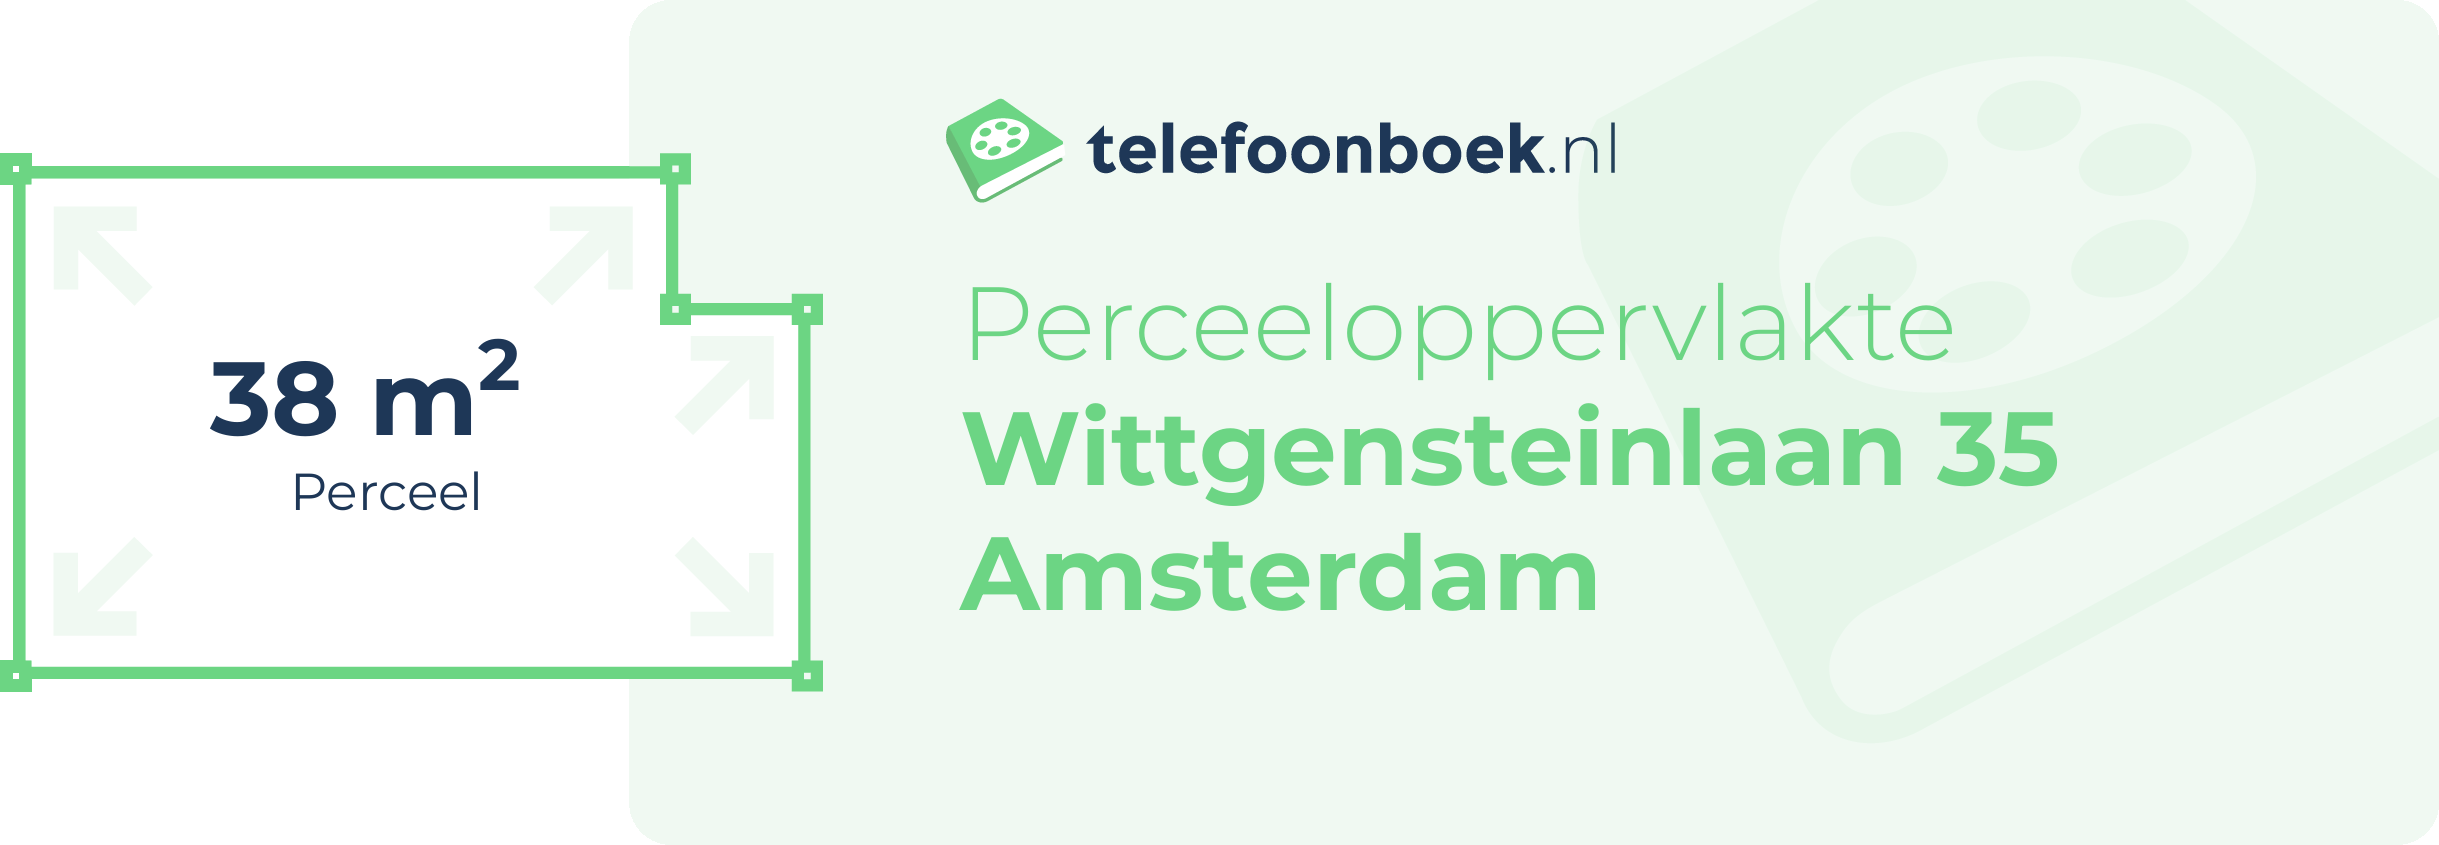 Perceeloppervlakte Wittgensteinlaan 35 Amsterdam